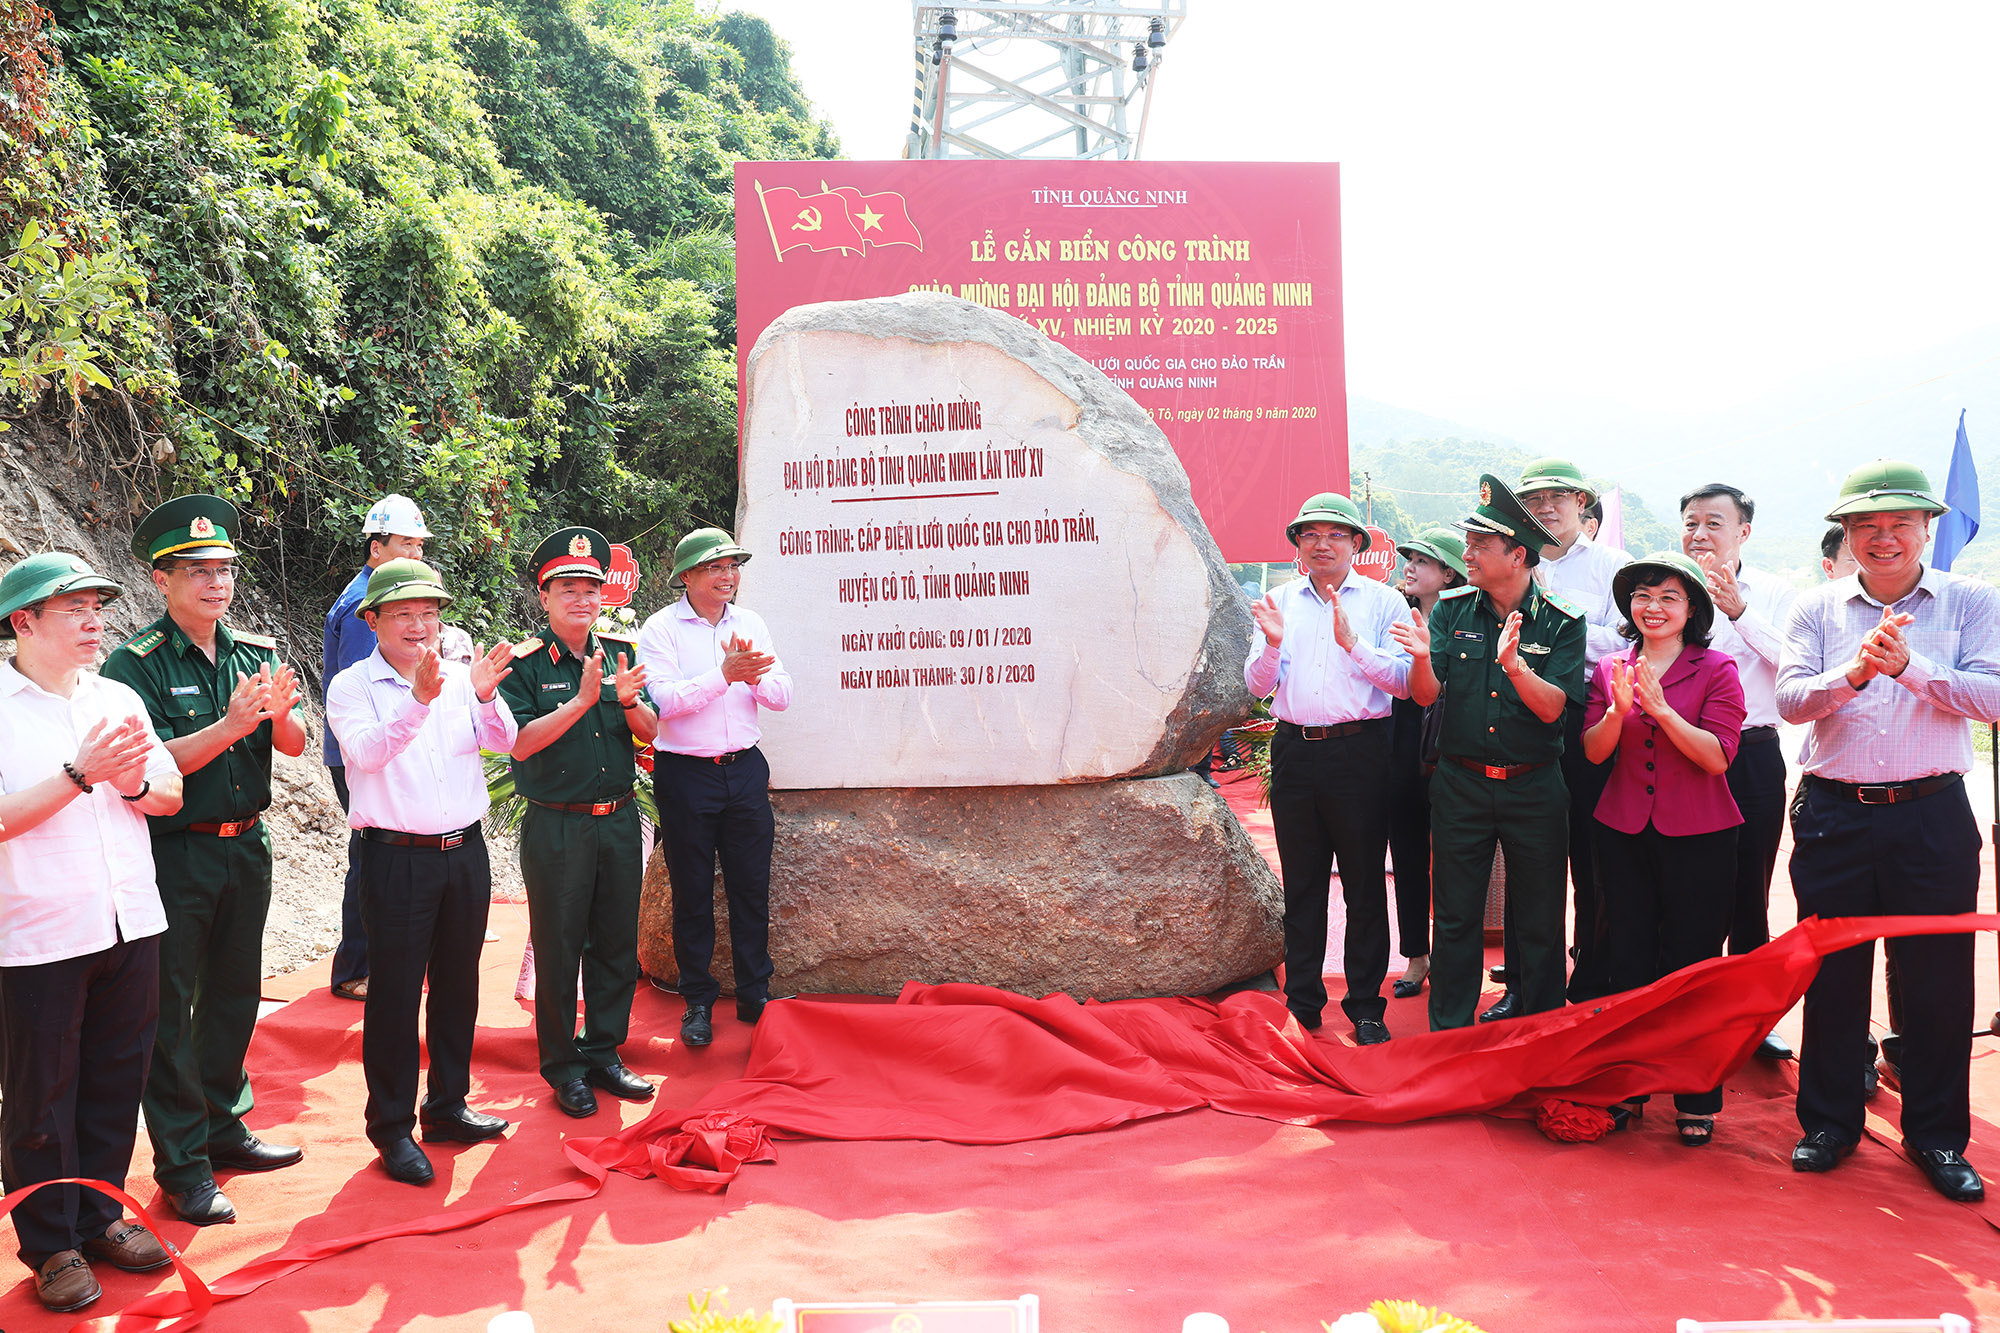 Dự án Cấp điện lưới Quốc gia cho đảo Trần huyện Cô Tô và đảo Cái Chiên huyện Hải Hà, tỉnh Quảng Ninh – Giai đoạn 2 đang thực hiện công tác kéo dải cáp điện, đấu nối tủ điện, lắp đặt công tơ, dự kiến hoàn thành và gắn biển chào mừng cuối tháng 8/2020.